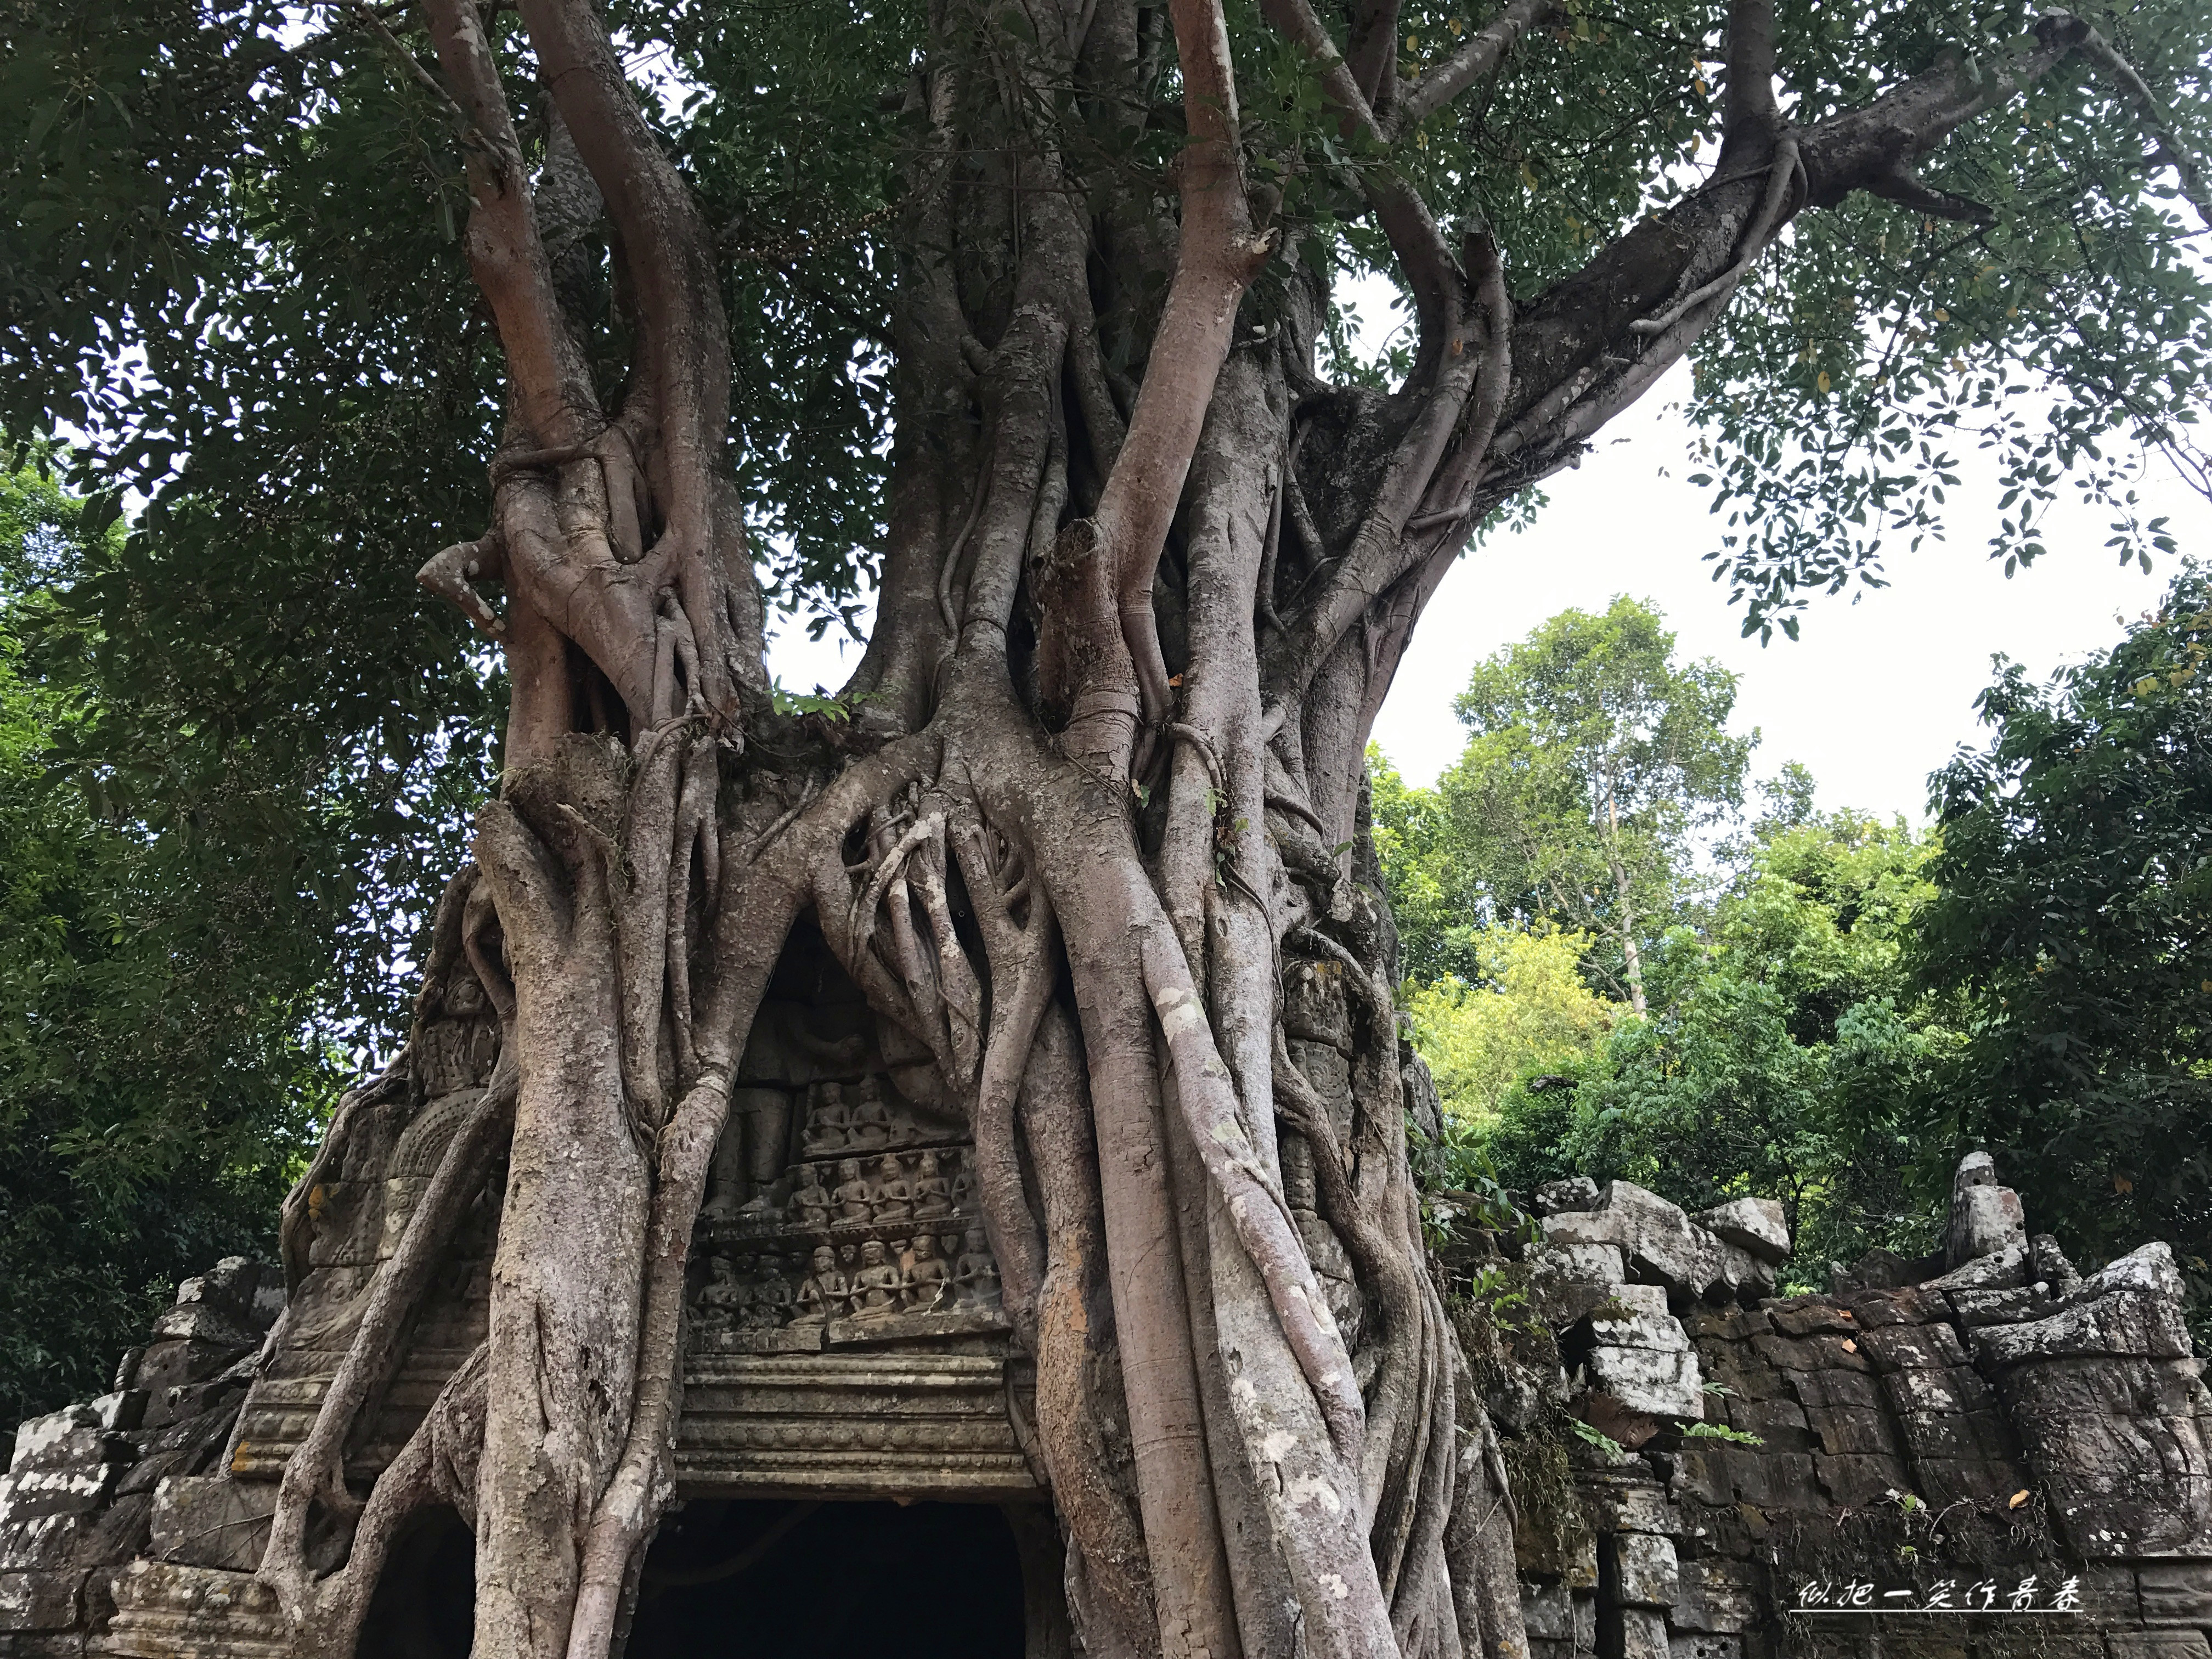 塔逊寺 这座寺很小，只为了看西门的四面佛塔被一棵大树包裹，向导说，塔布隆寺是在建筑内找树根，而塔逊寺